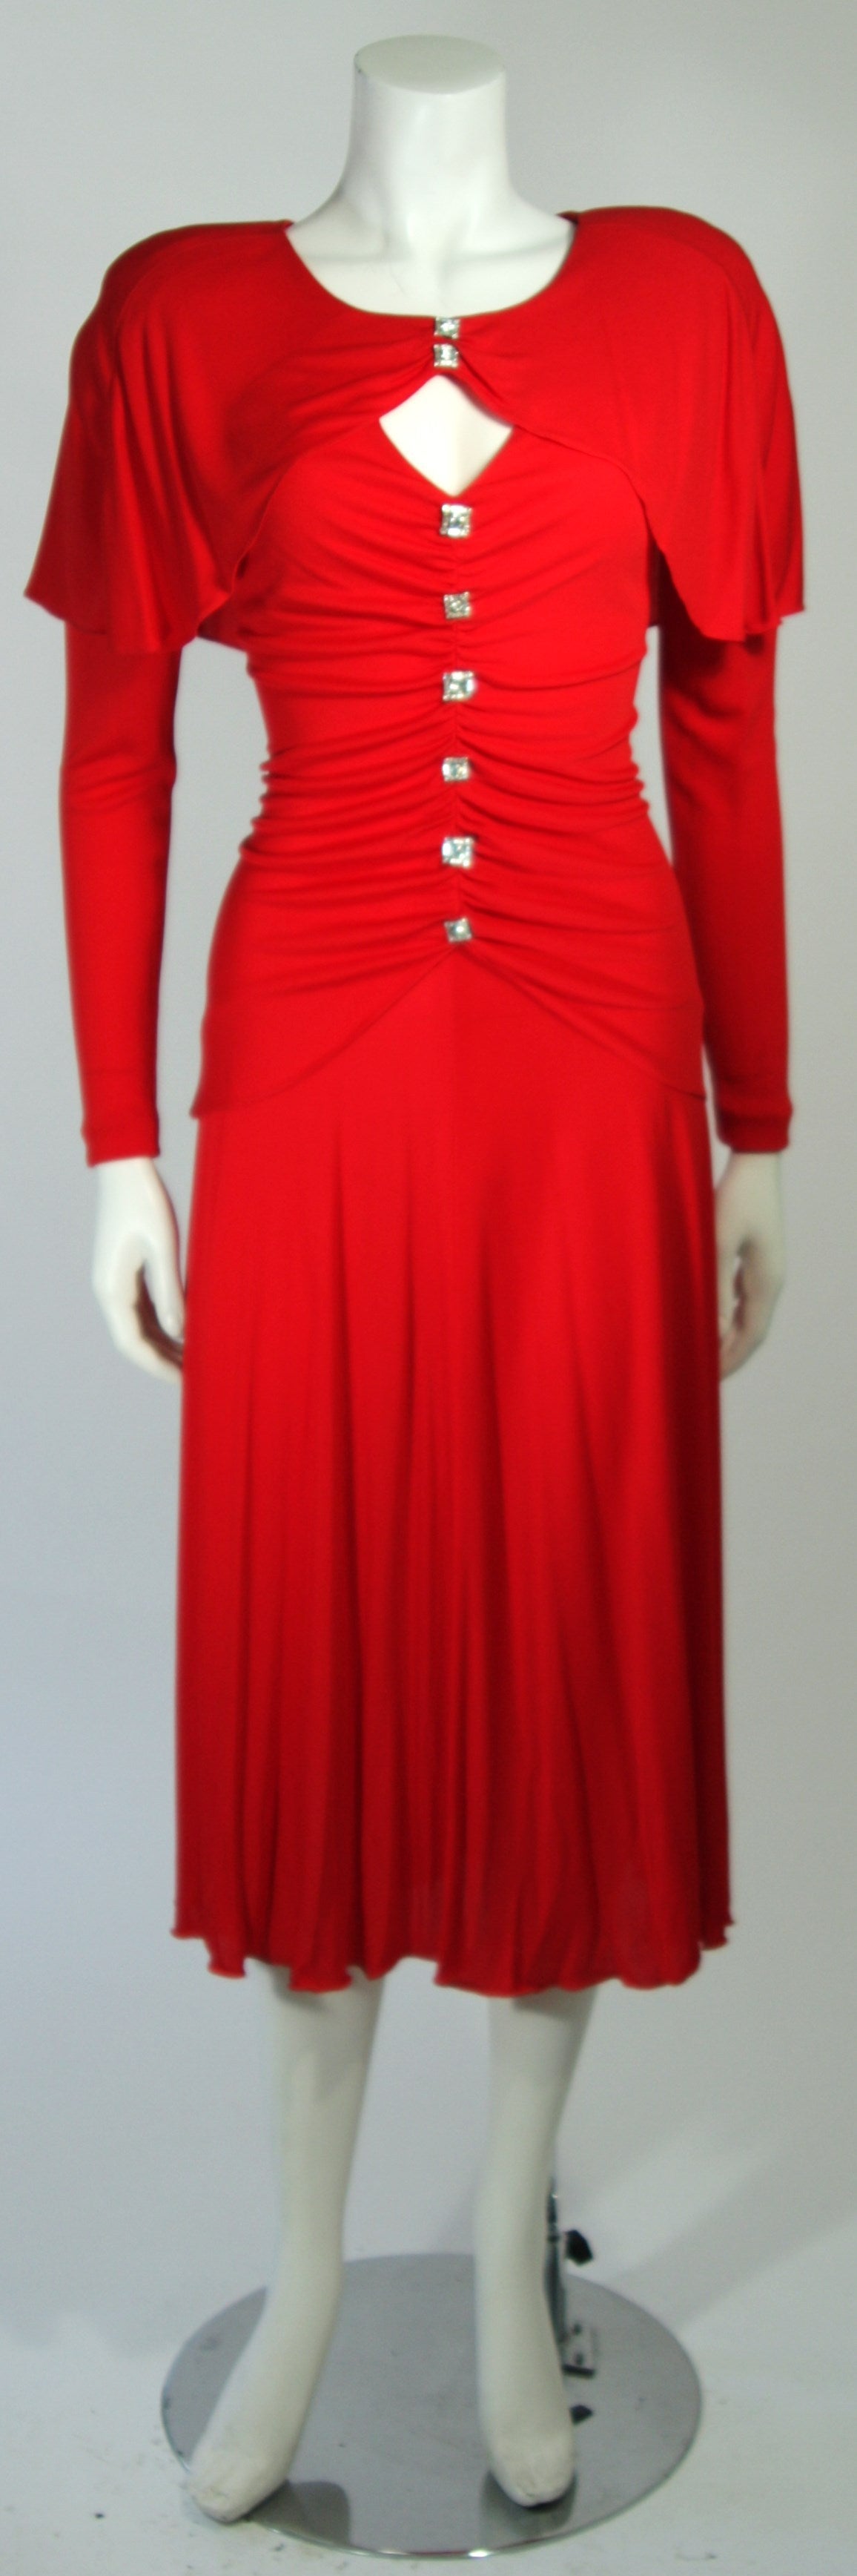 Cette robe de cocktail Holly Harp est confectionnée dans un superbe jersey rouge. Dotée de boutons en strass, de fronces et de manches longues, cette robe offre une coupe complémentaire. Épaules rembourrées. En parfait état.

**Veuillez croiser